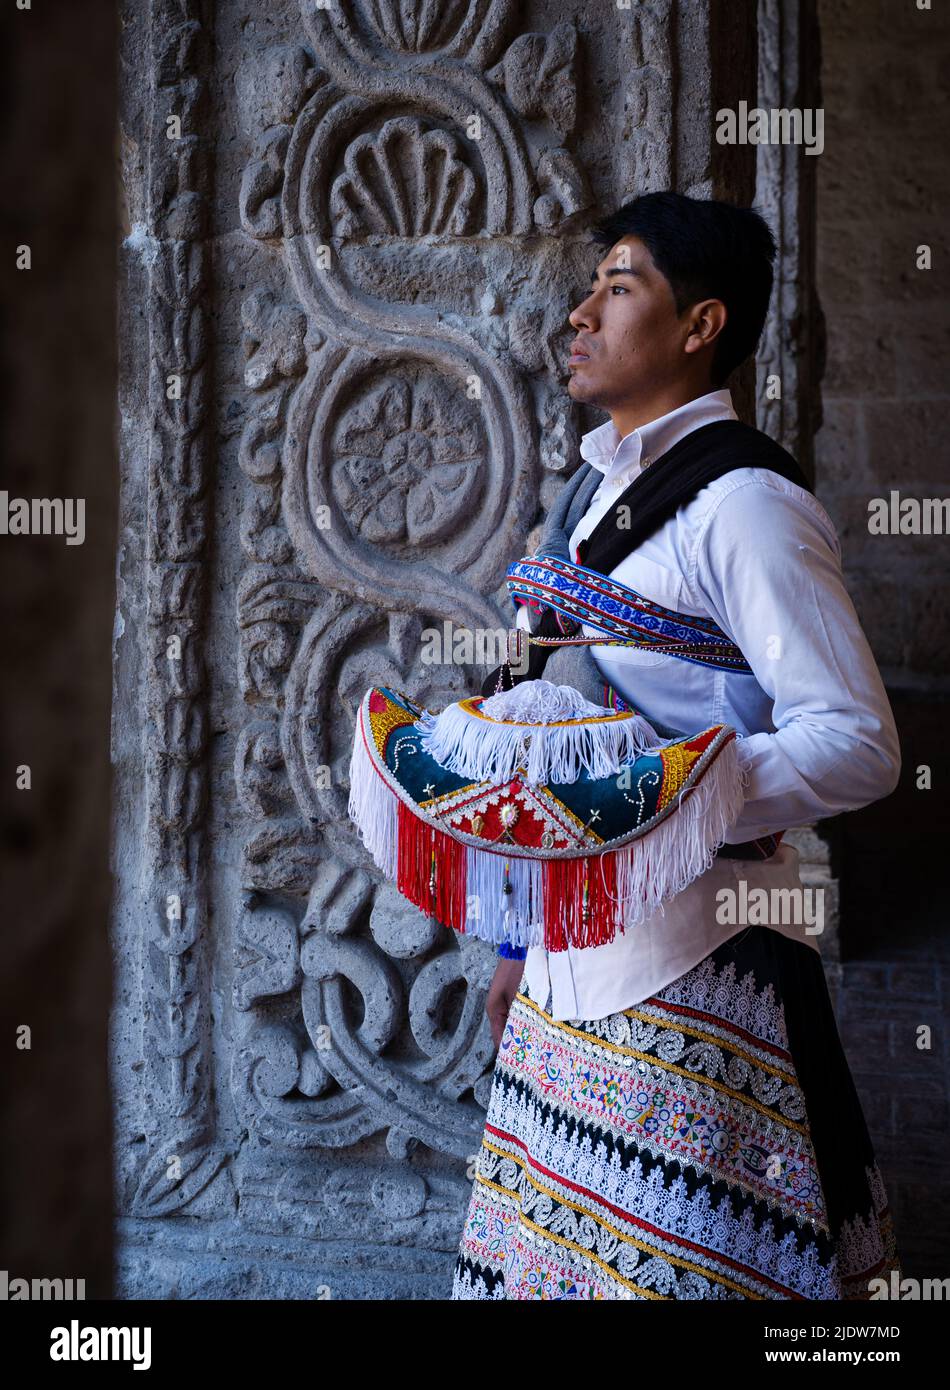 AREQUIPA, PERU - CA. SEPTEMBER 2019: Junger peruanischer Mann in einem typischen andenkleid. Stockfoto